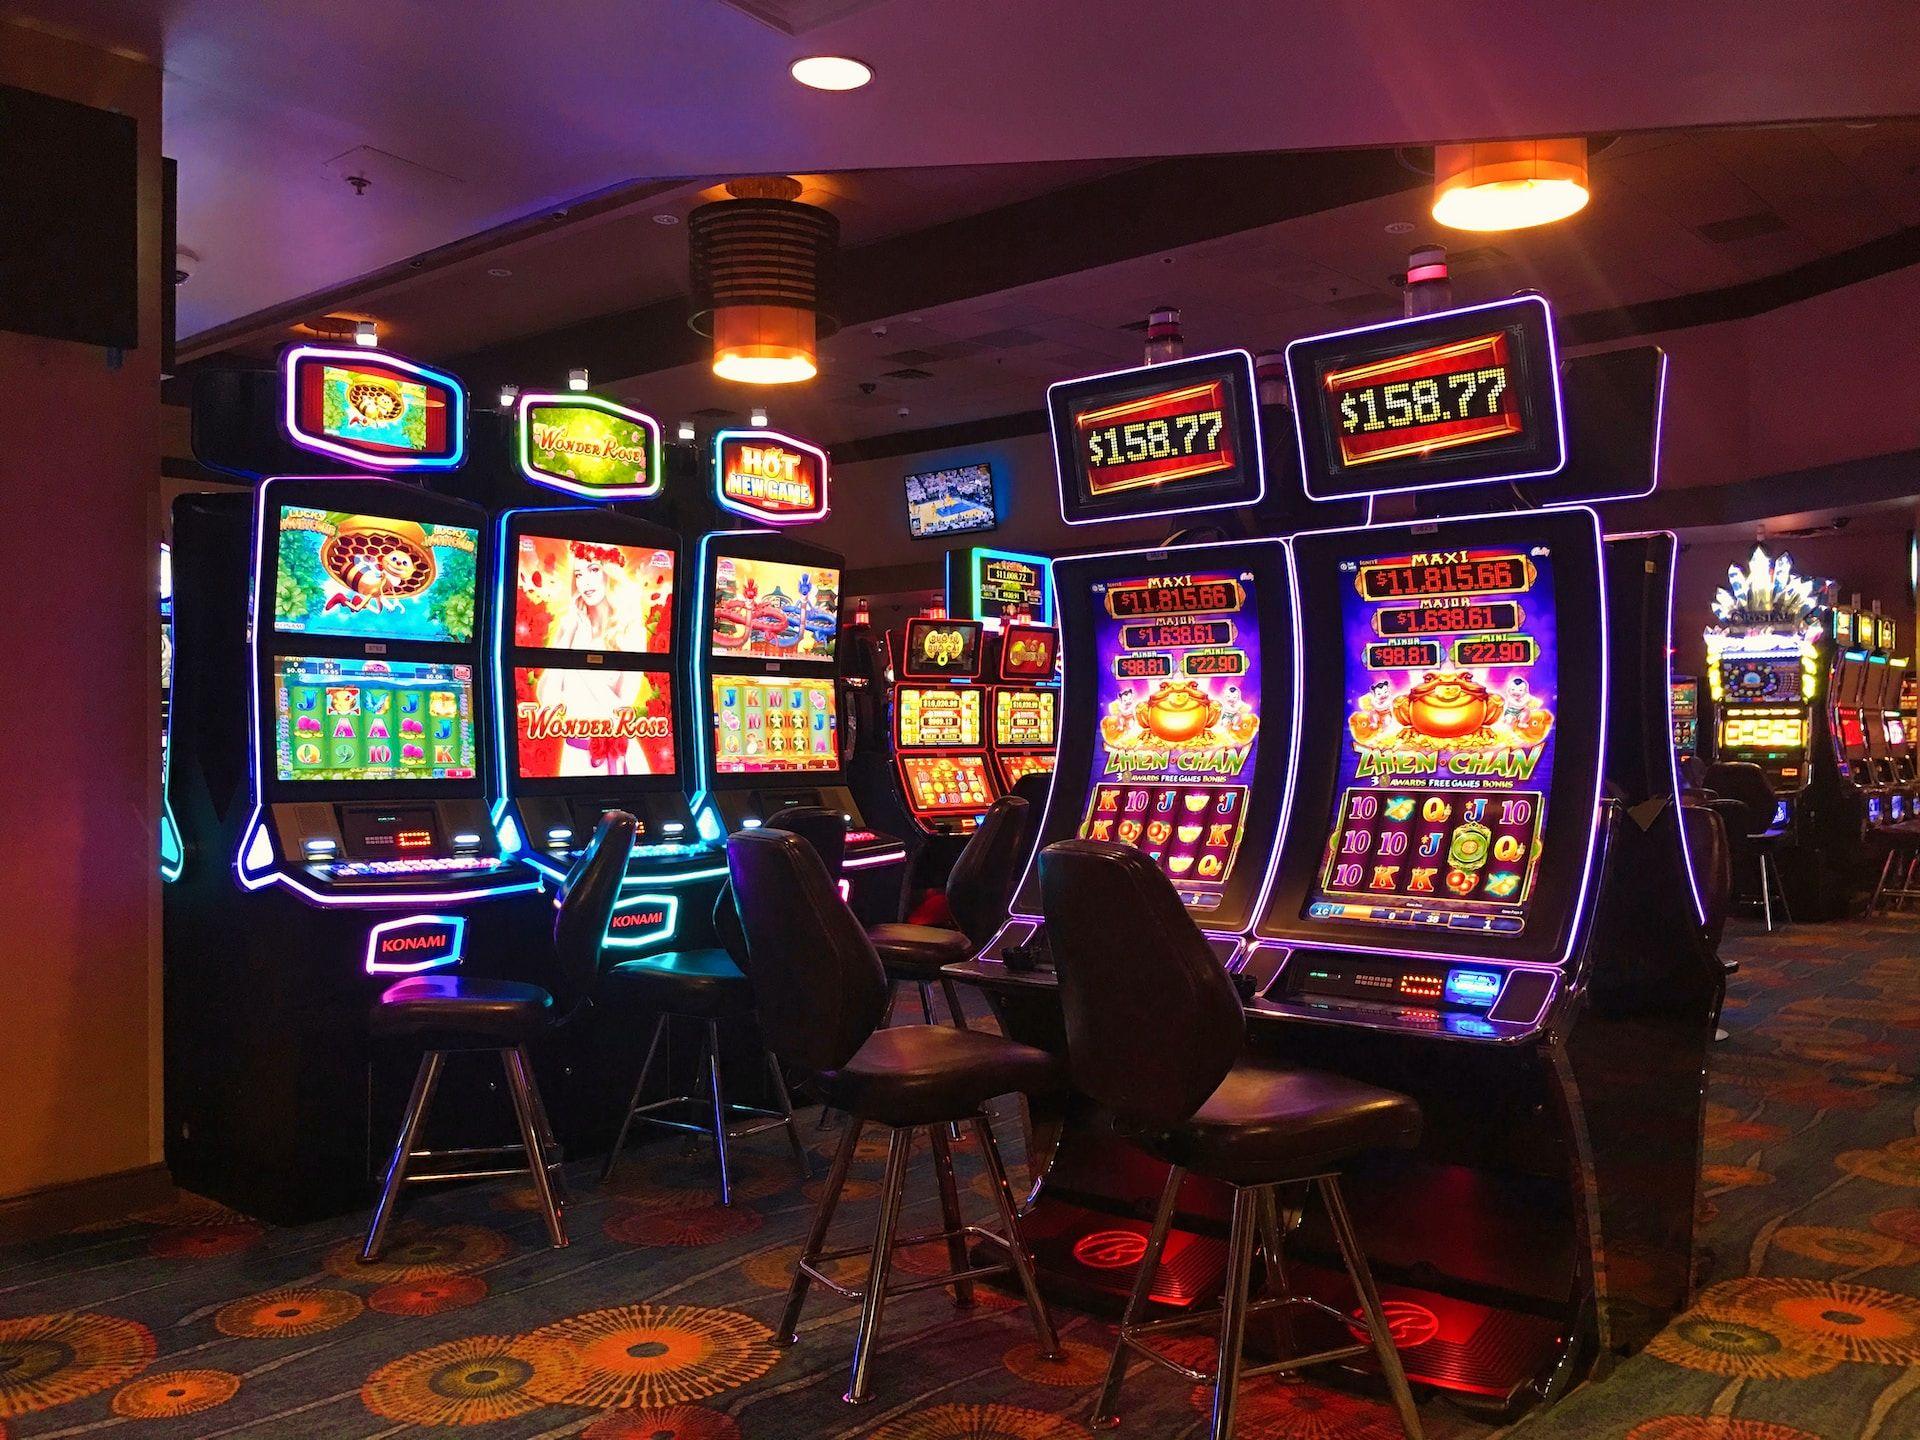 Die Welt der Novoline Casinos: Ein tiefer Einblick in ihre Spiele, Features und Popularität